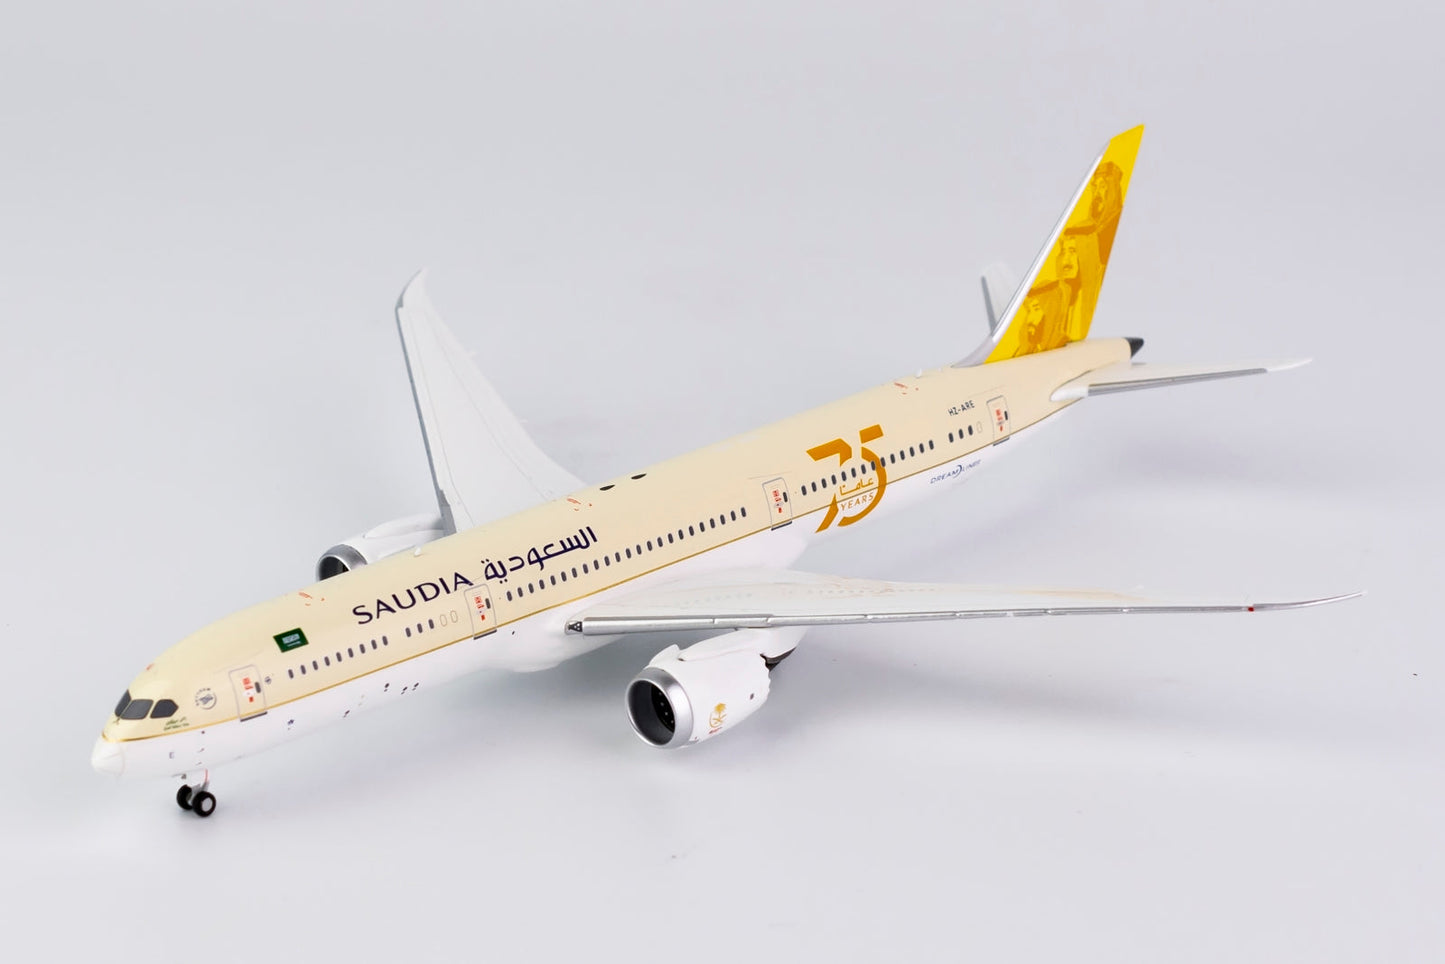 *1/400 Saudia - Saudi Arabian Airlines B 787-9 Dreamliner "75th Anniversary" NG Models 55077